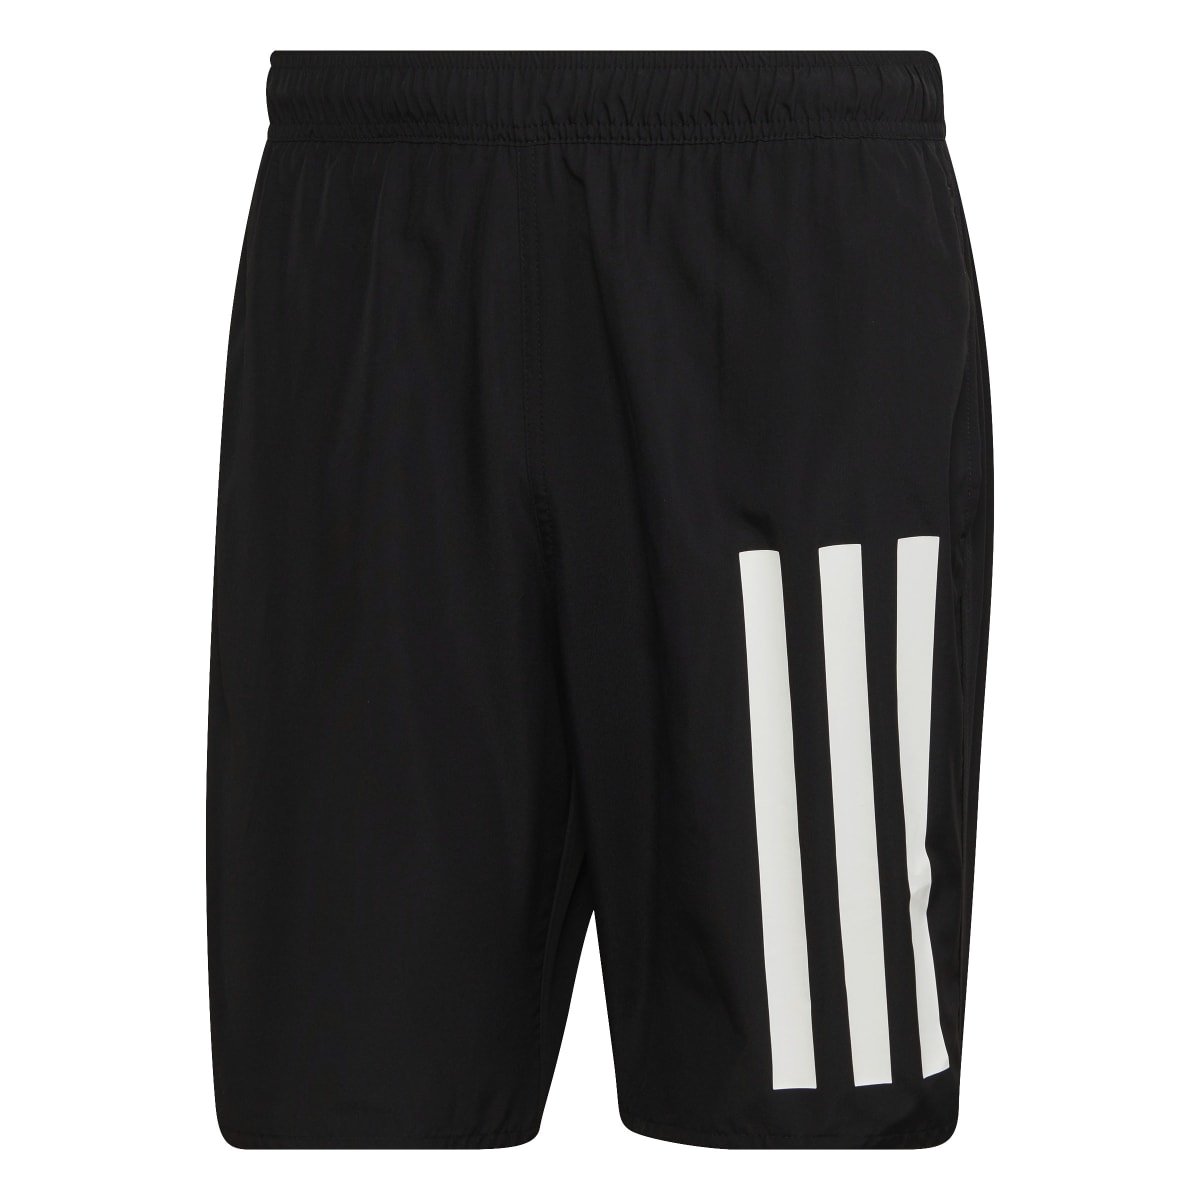 Shorts Adidas Chelsea 3 Listras - masculino - preto+branco Preto